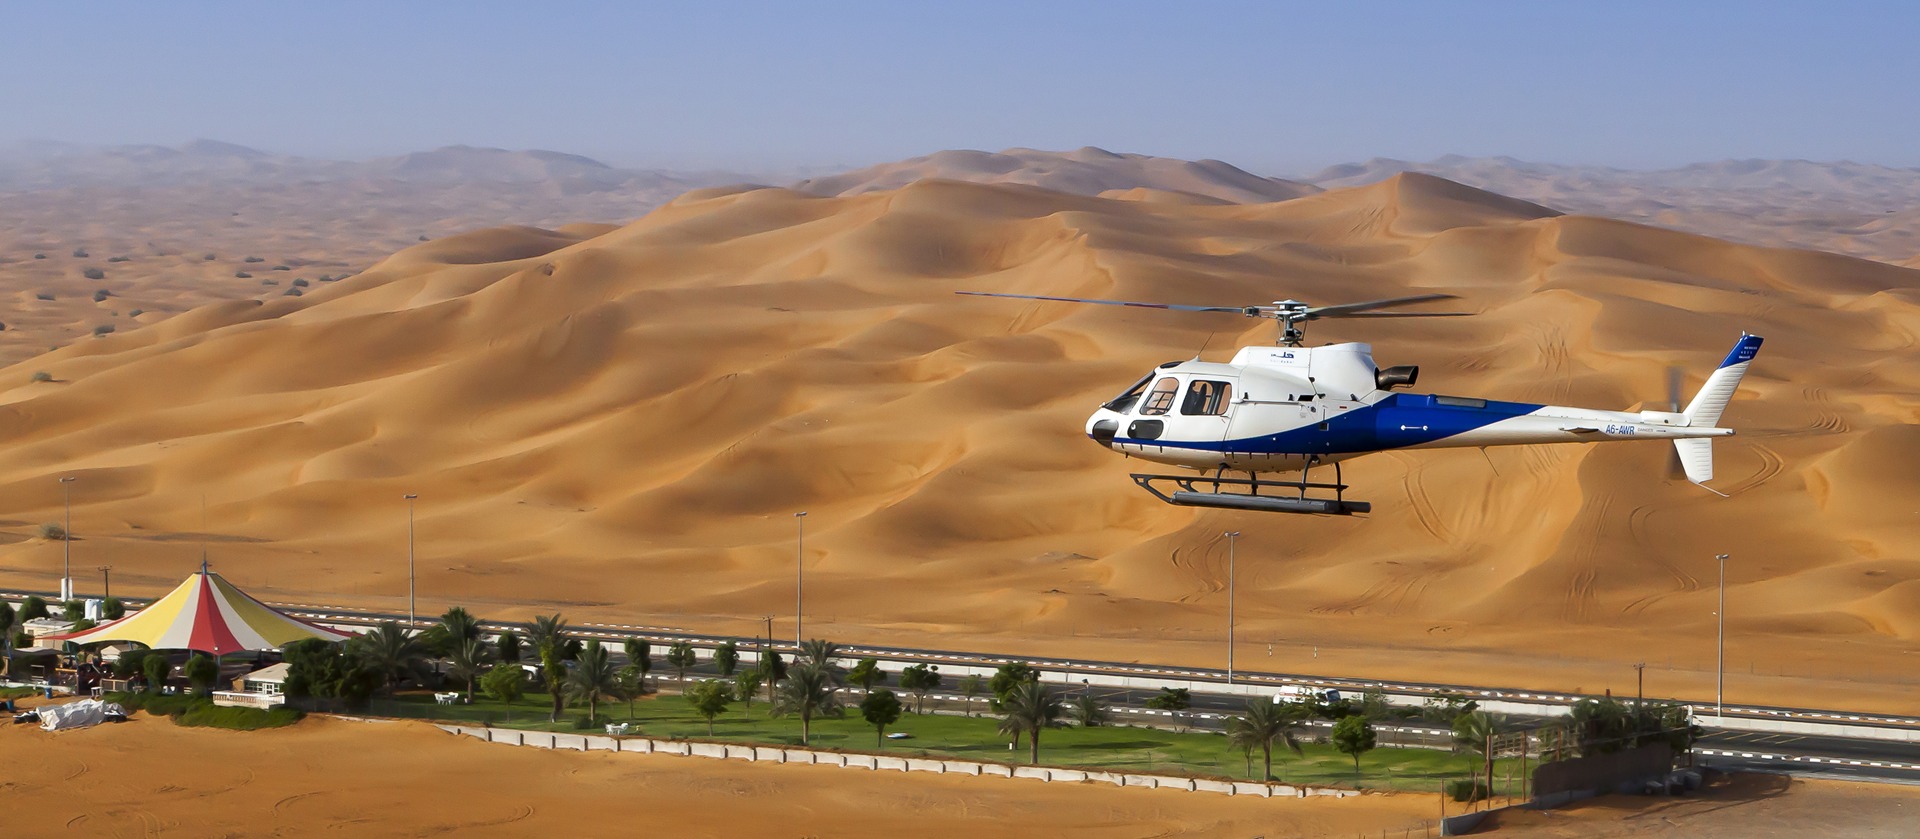 مصادر “المواطن”: الهليكوبتر في سماء المملكة للسياحة والرحلات